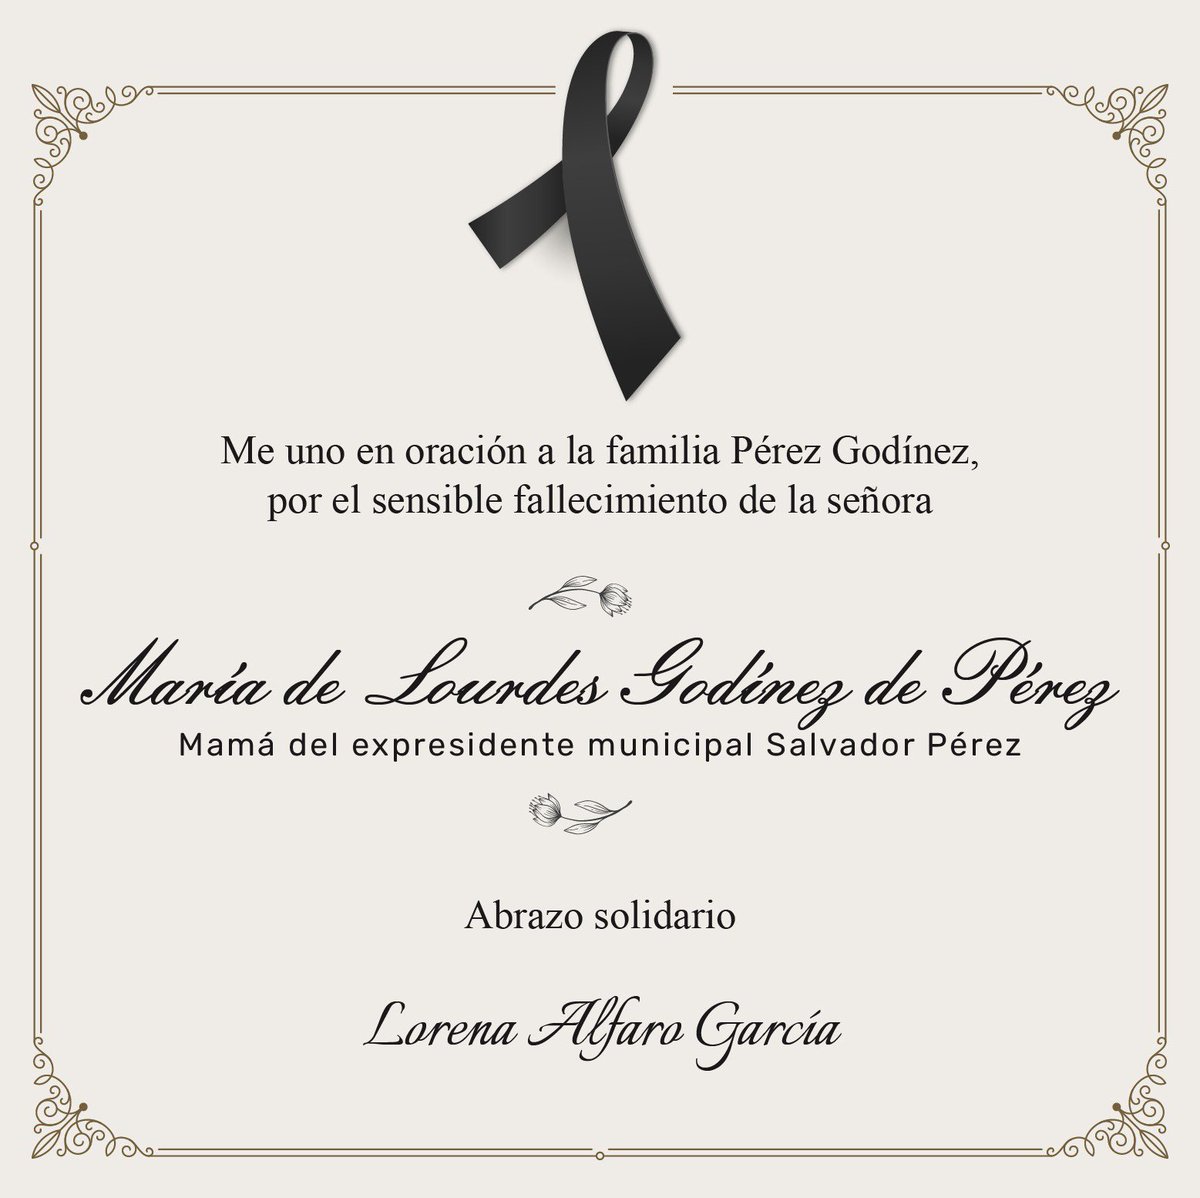 Lamento el fallecimiento de la señora María de Lourdes, mamá del expresidente Salvador Pérez. A él y a su familia les expreso mis más sinceras condolencias. Deseo que Dios dé pronto consuelo a su familia. Descanse en paz.